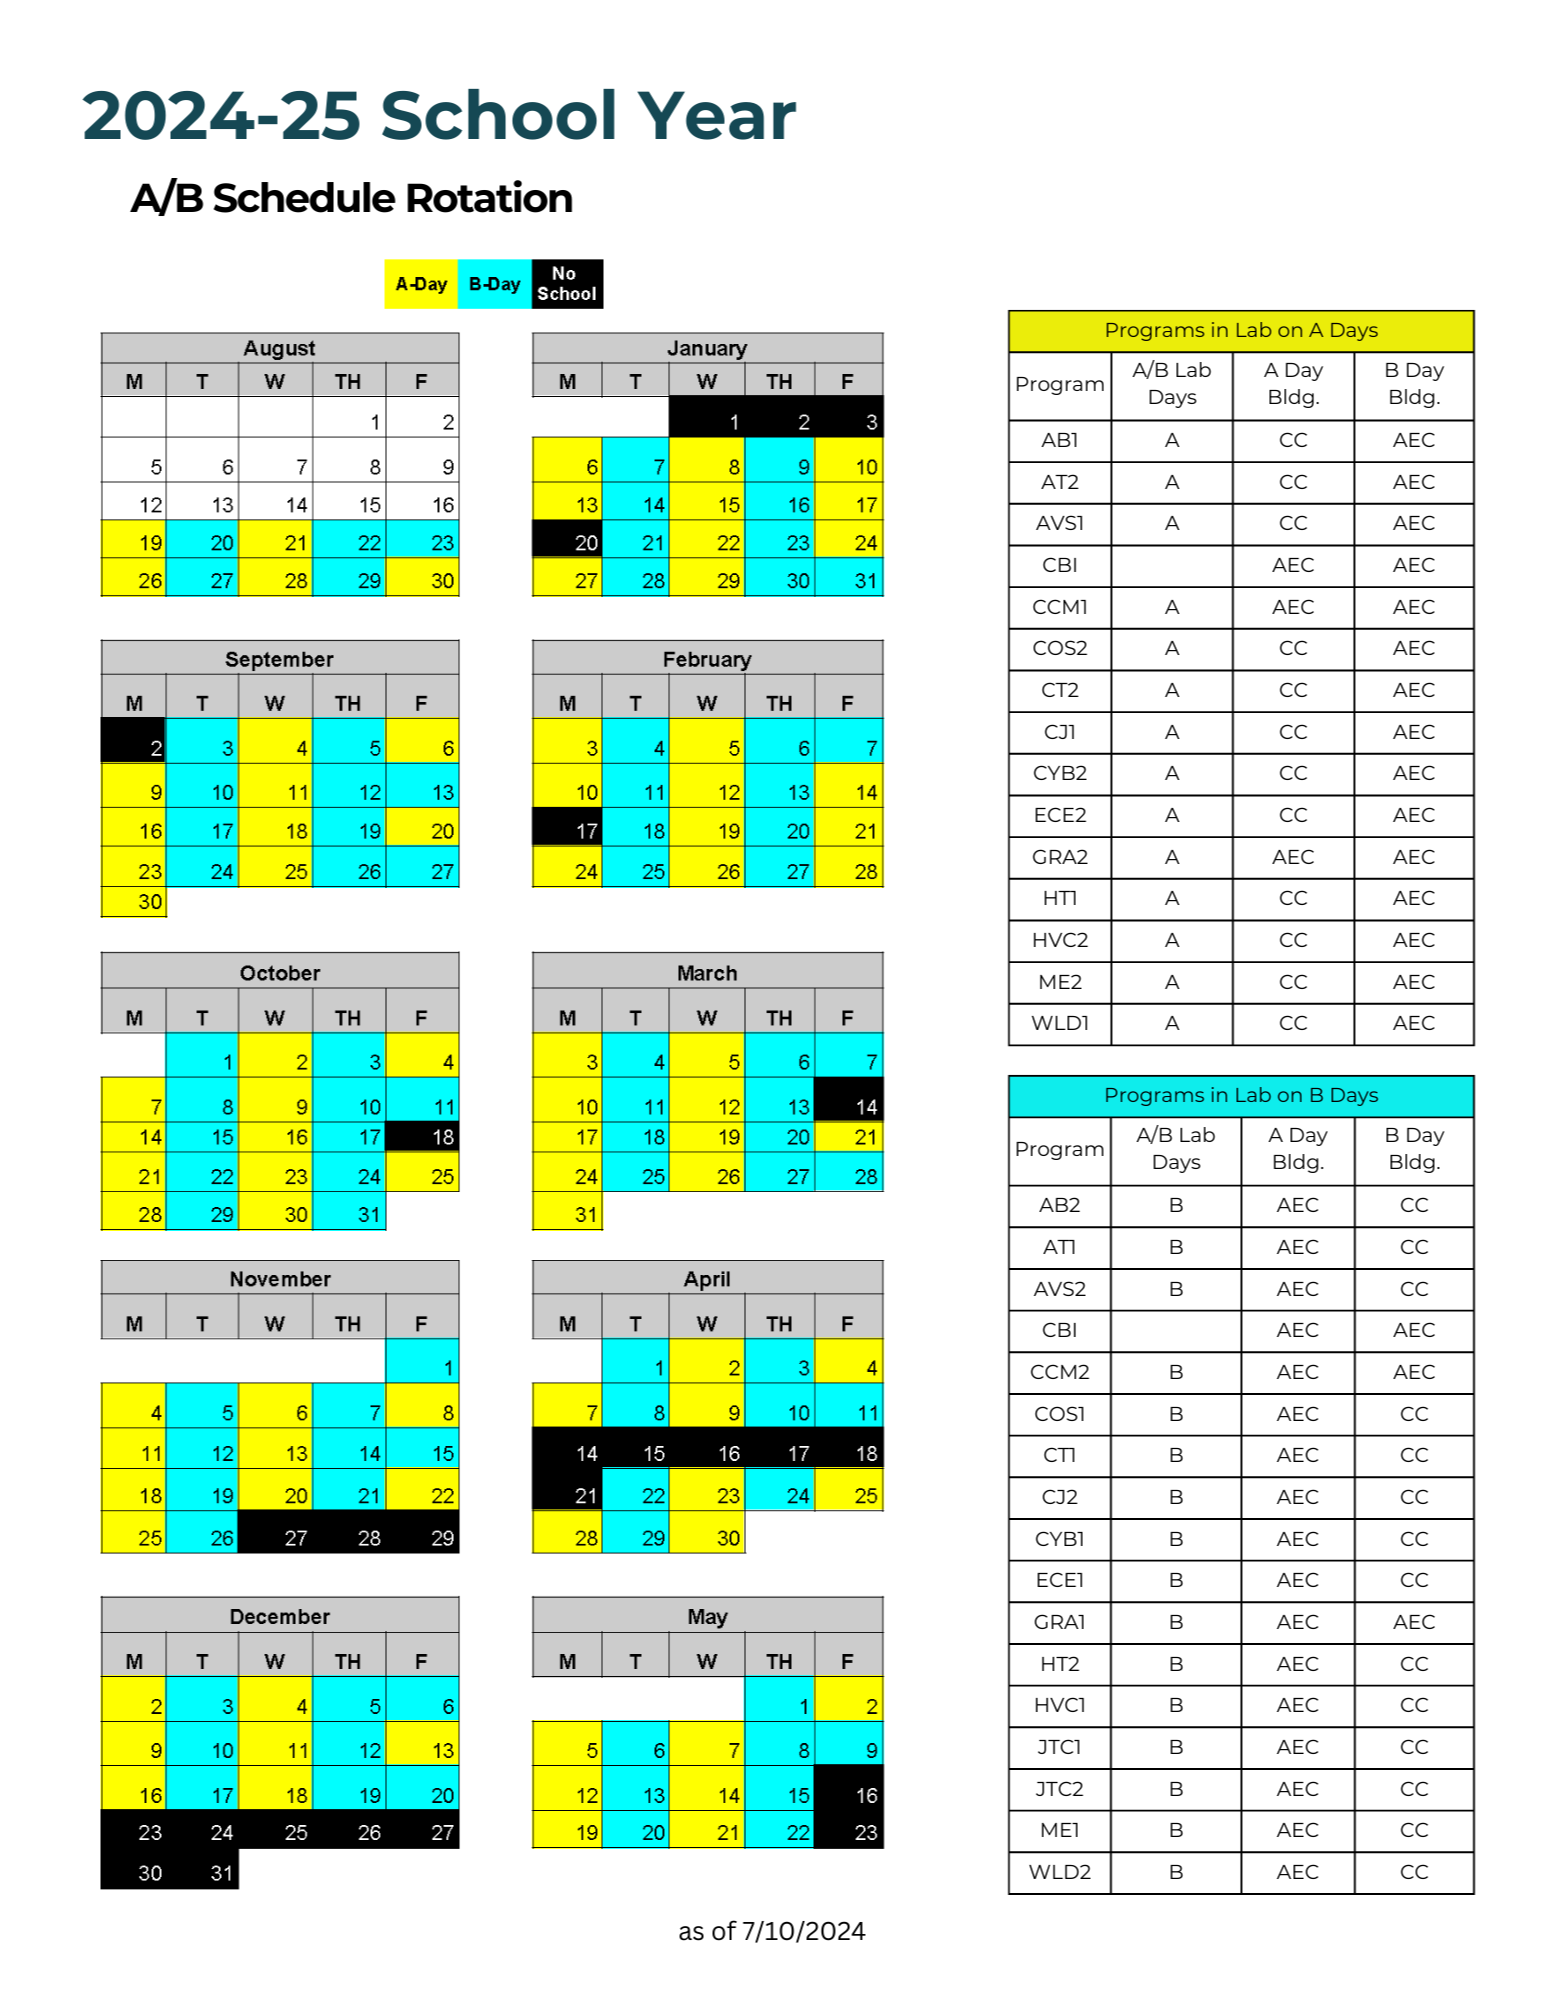 A/B Schedule